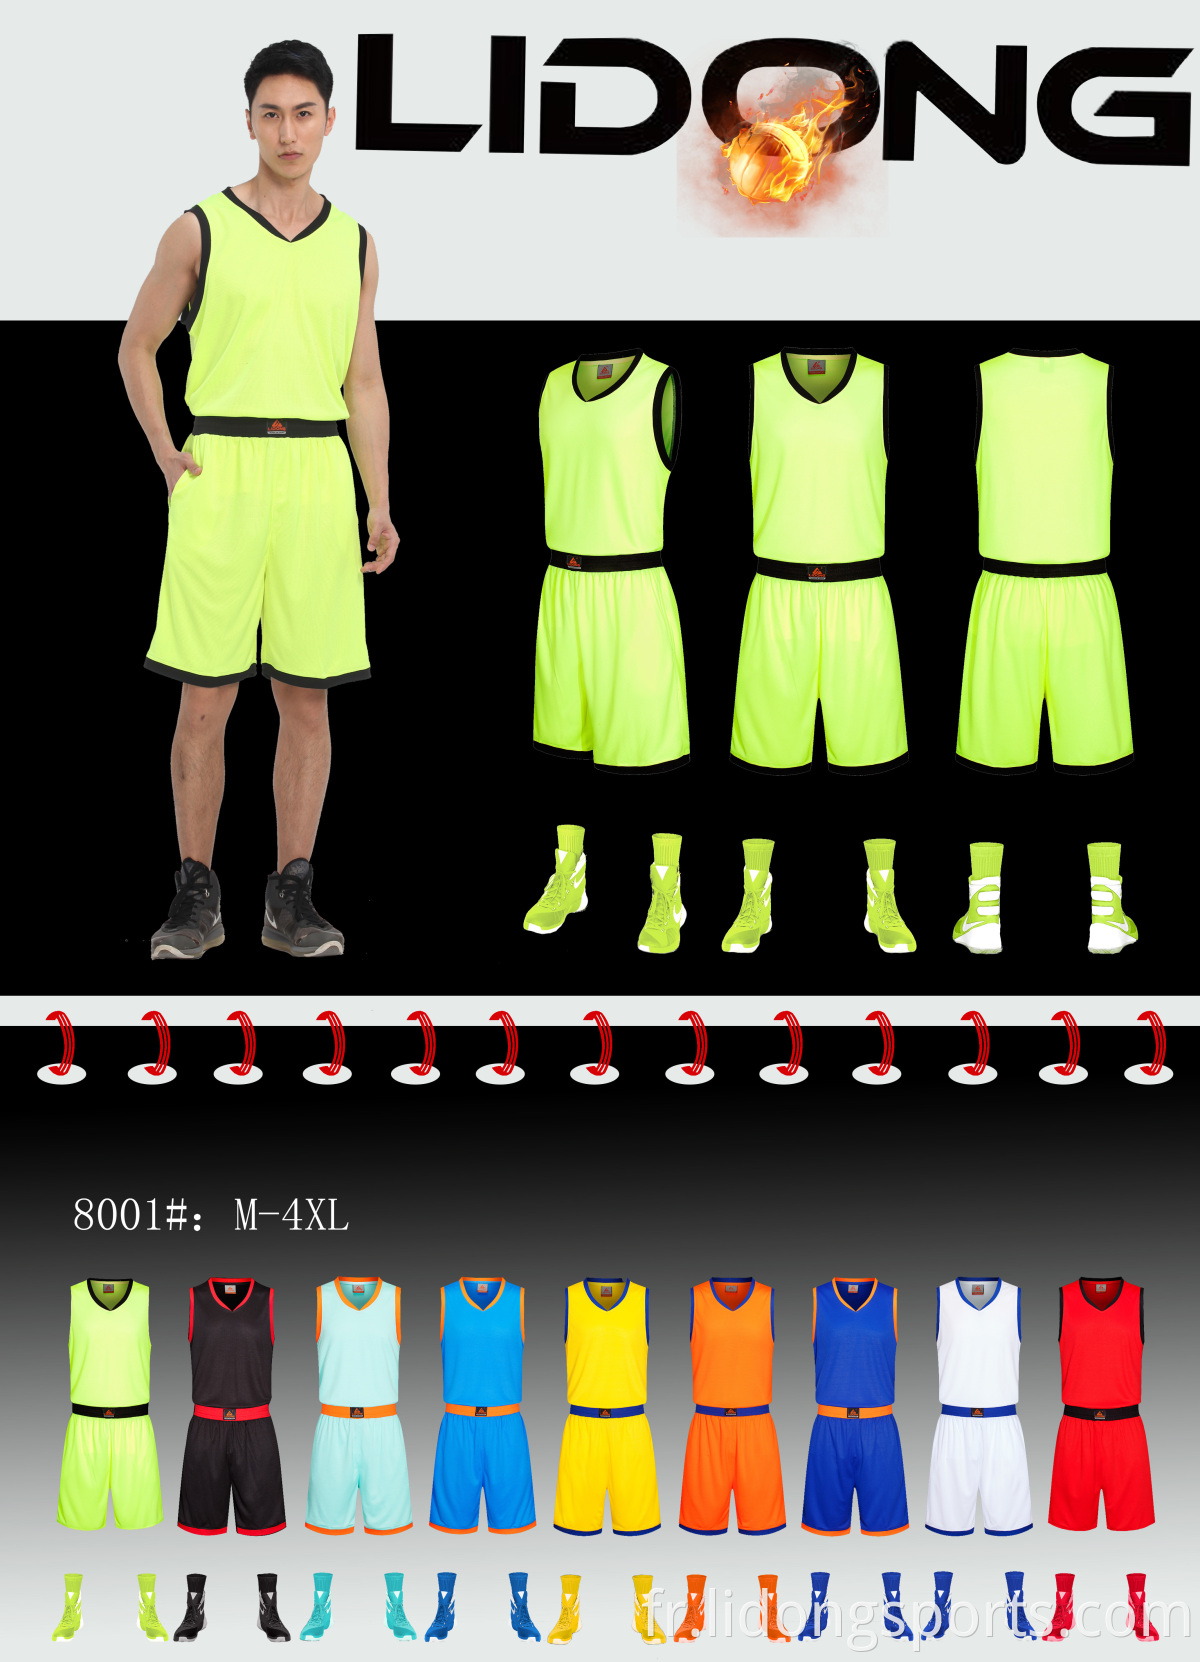 Dernier design de maillot de basket-ball 2021 uniforme de basket-ball pour les jeunes personnalisés bon marché